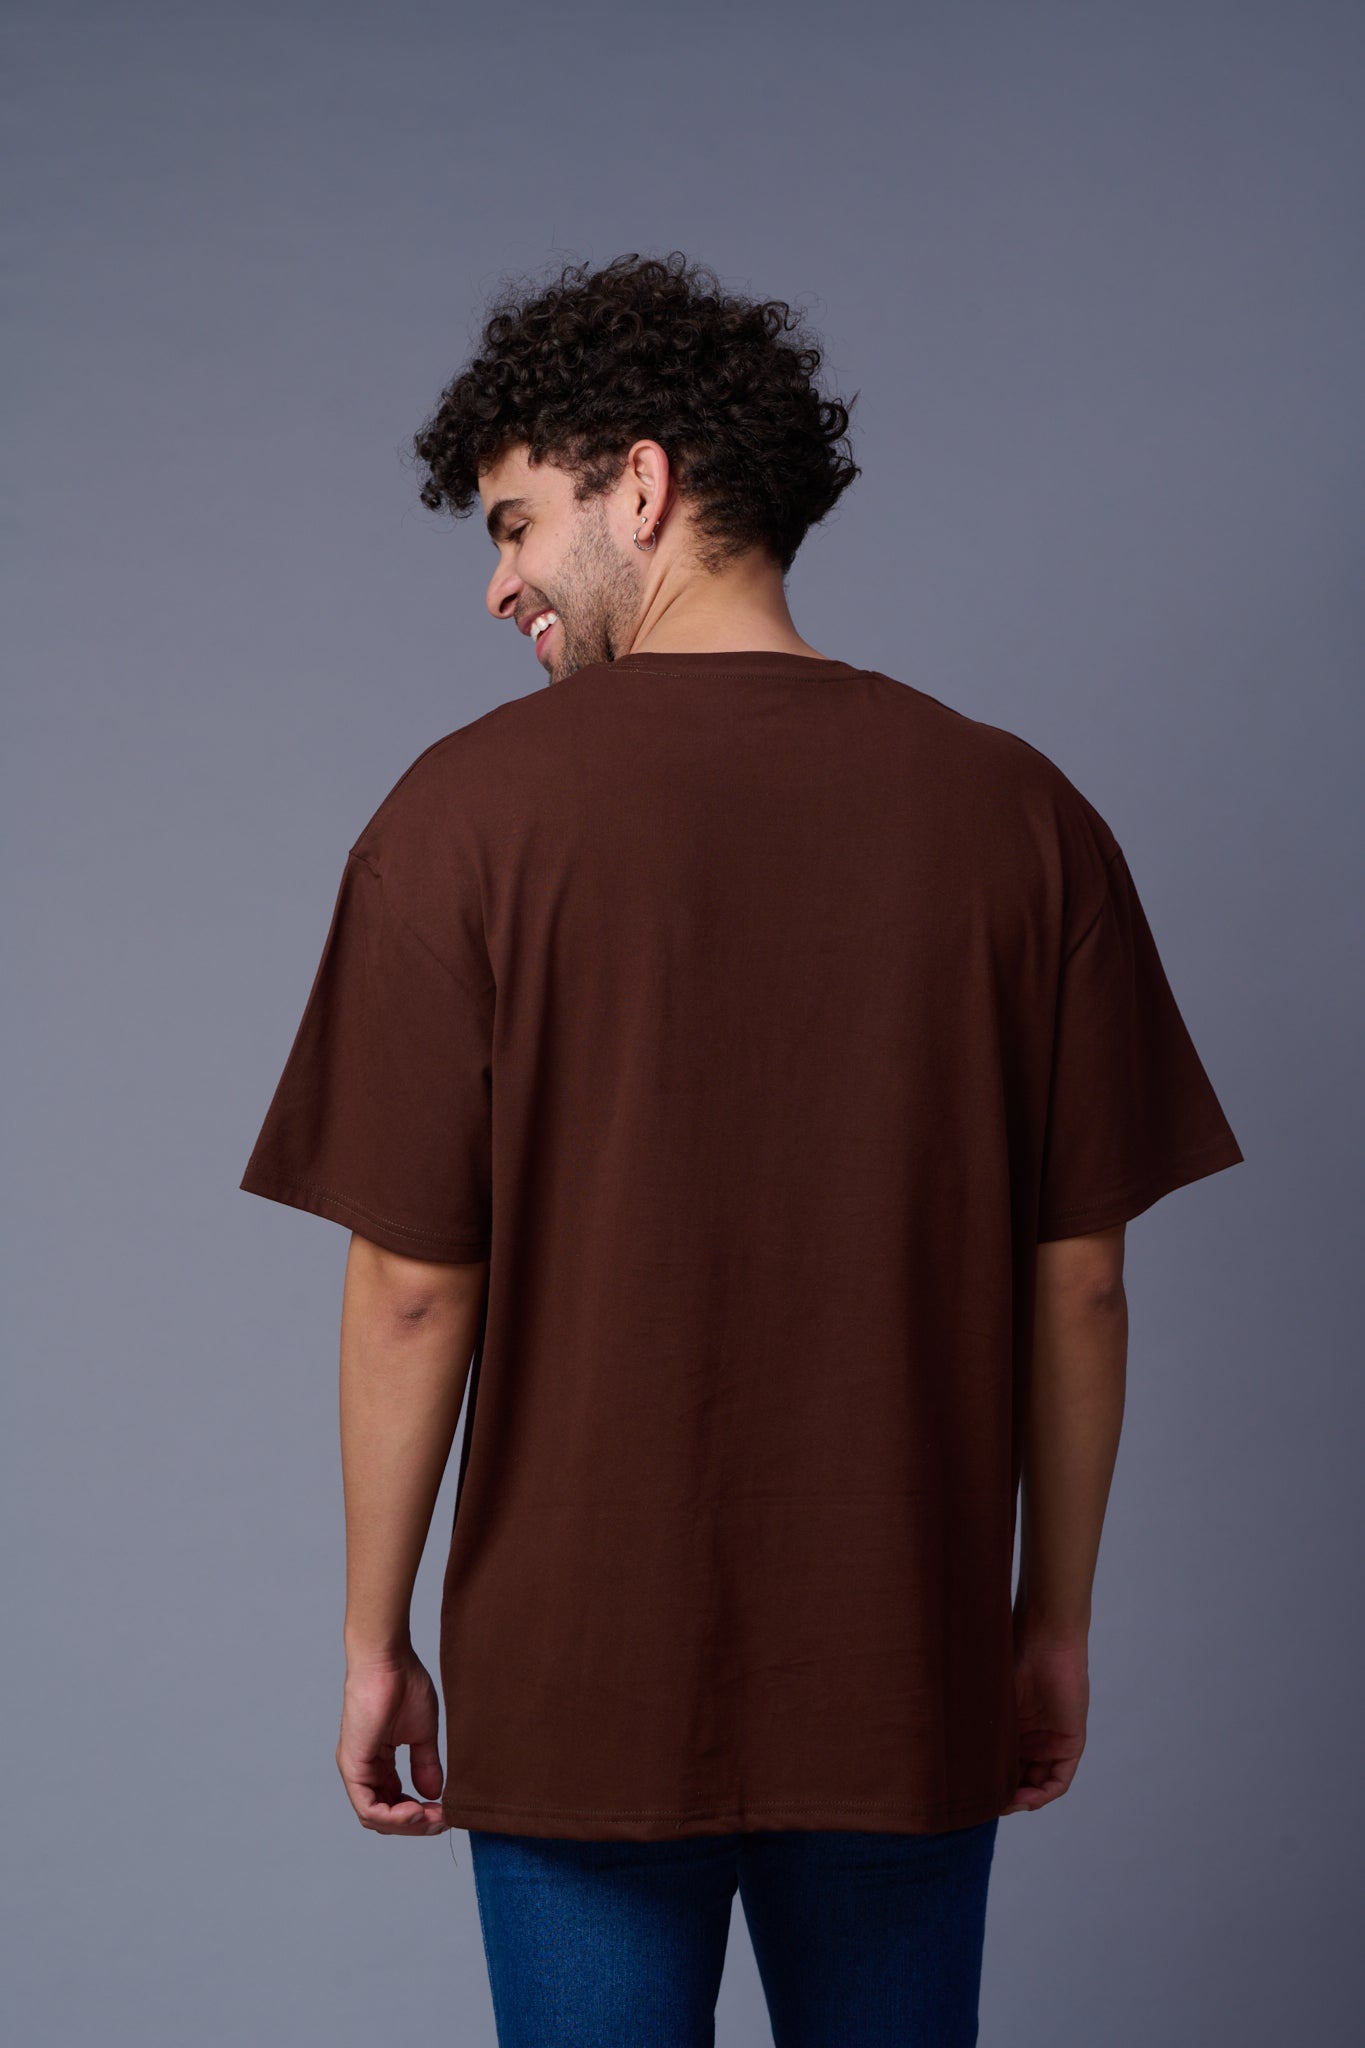 Baid Boiyn (Skater) Printed Oversized T-Shirt for Men